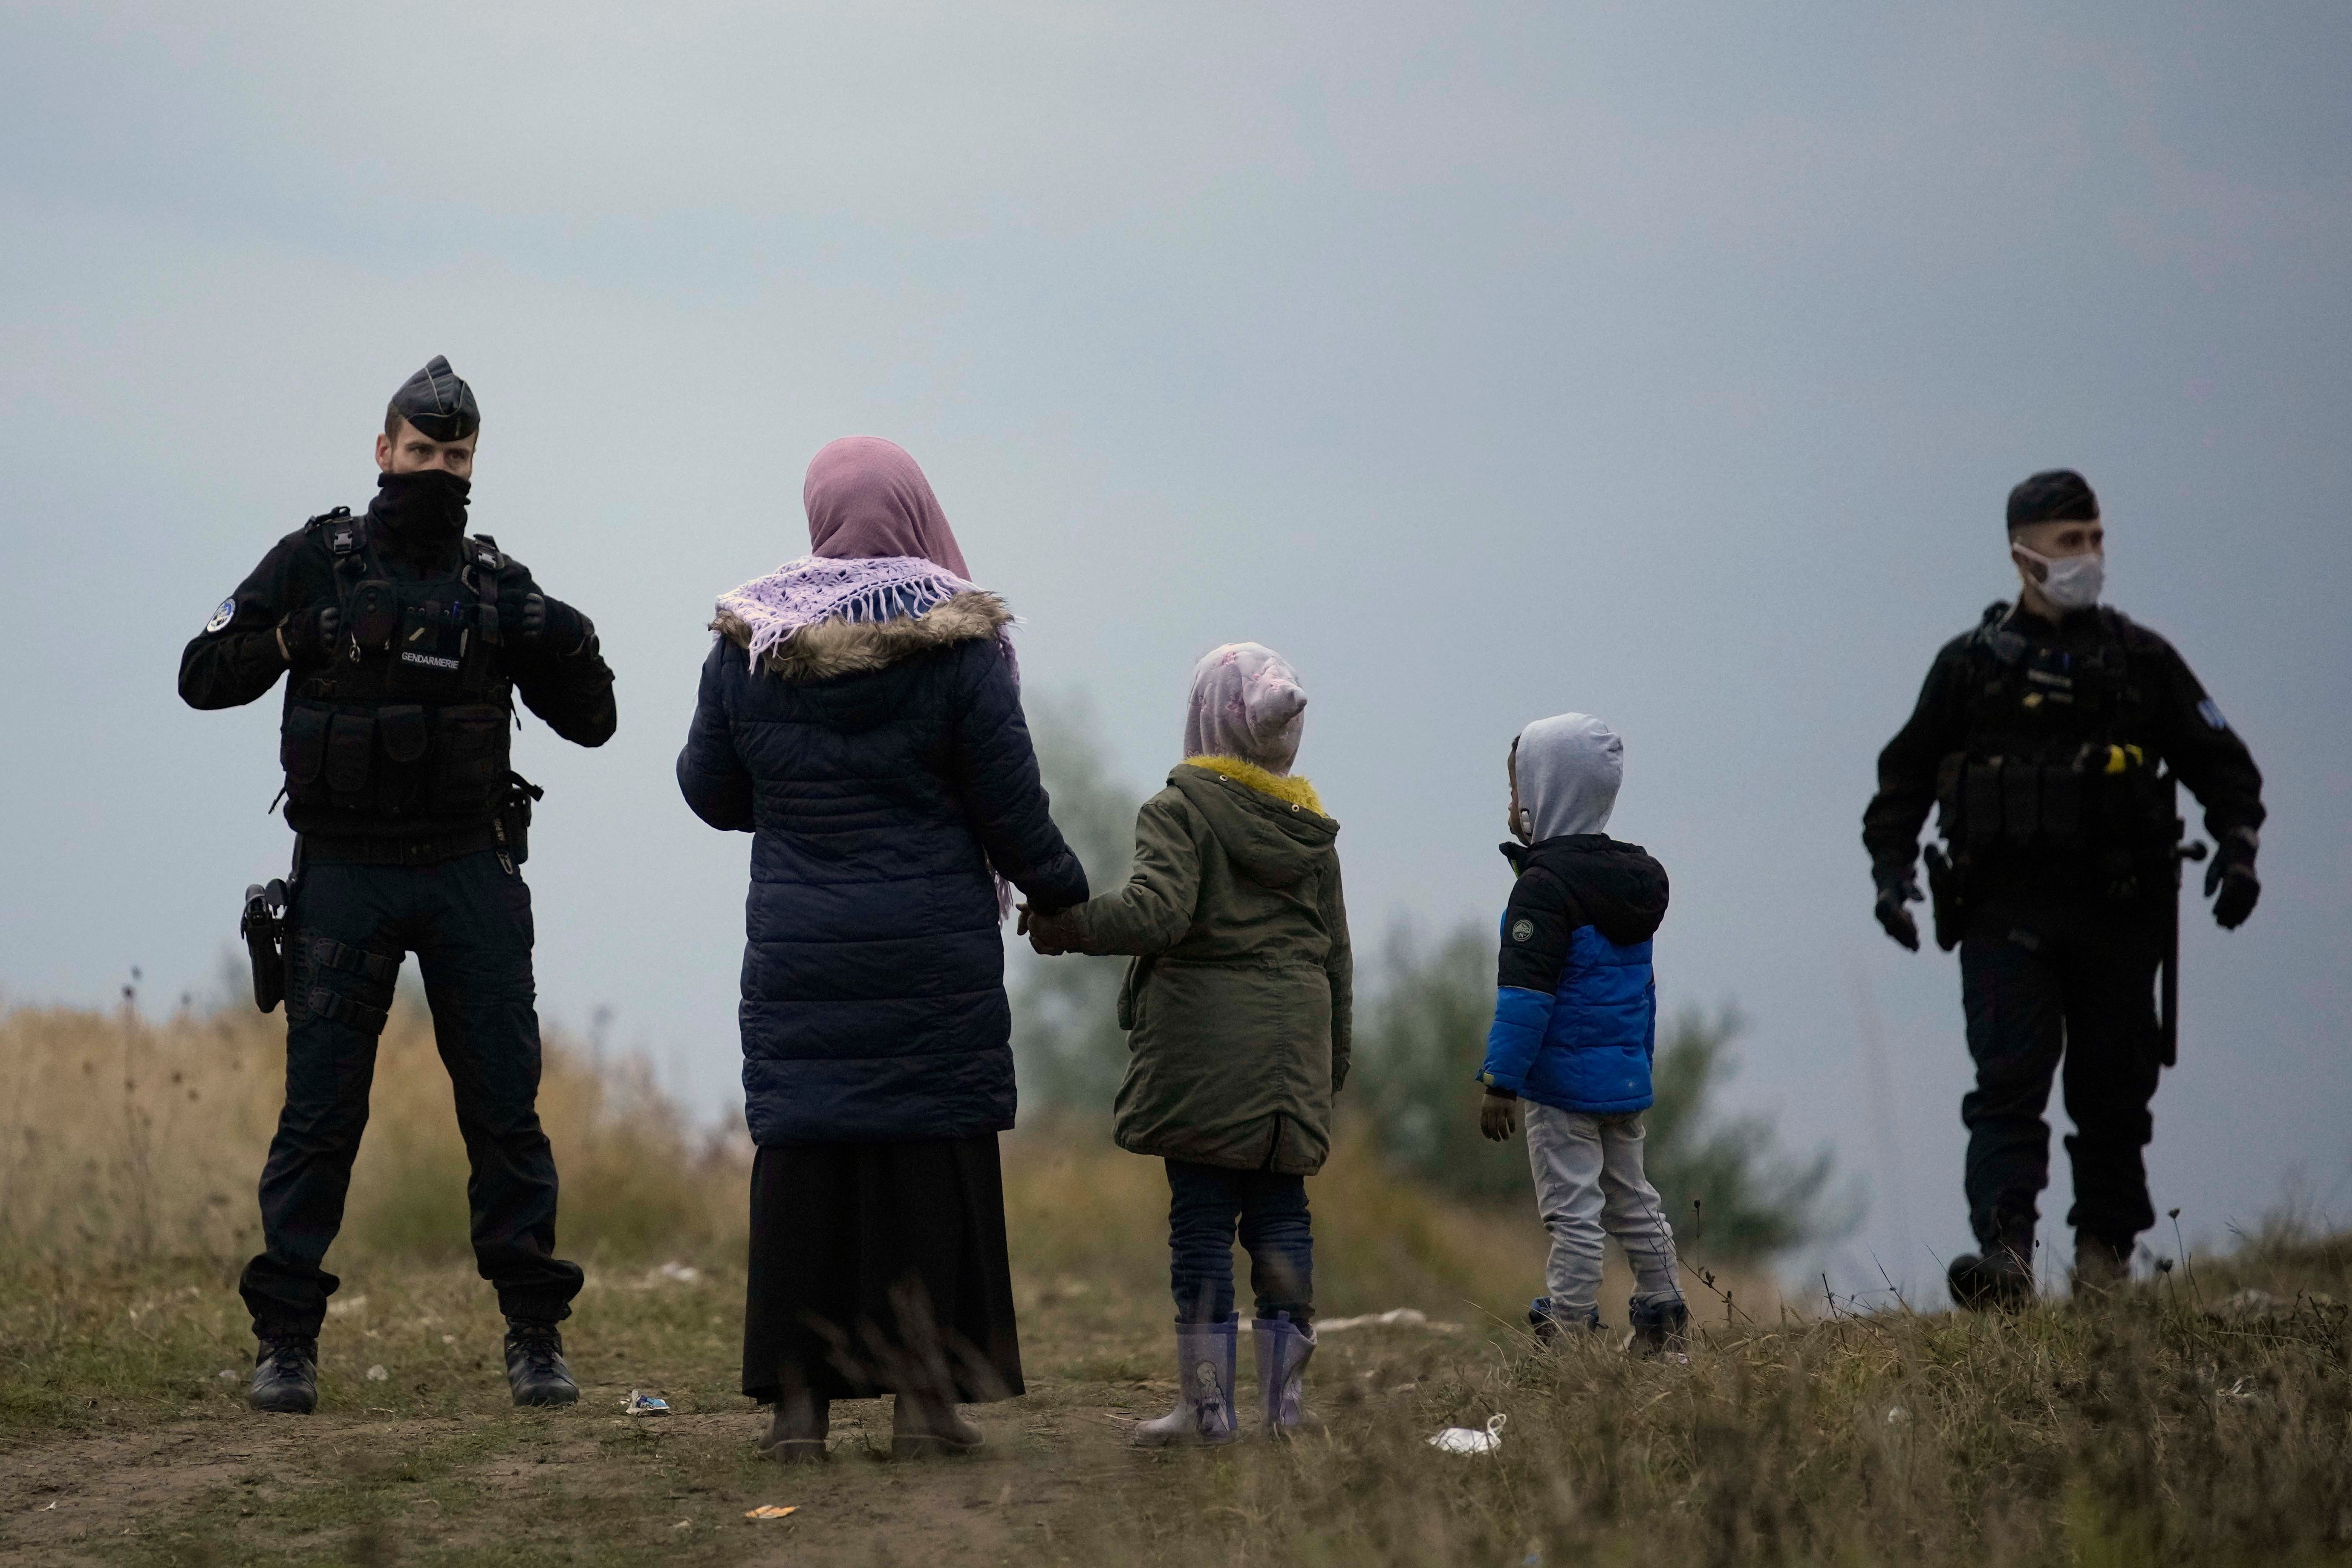 Prancis Harus Mengakhiri Kebijakan Kasar Terhadap Migran